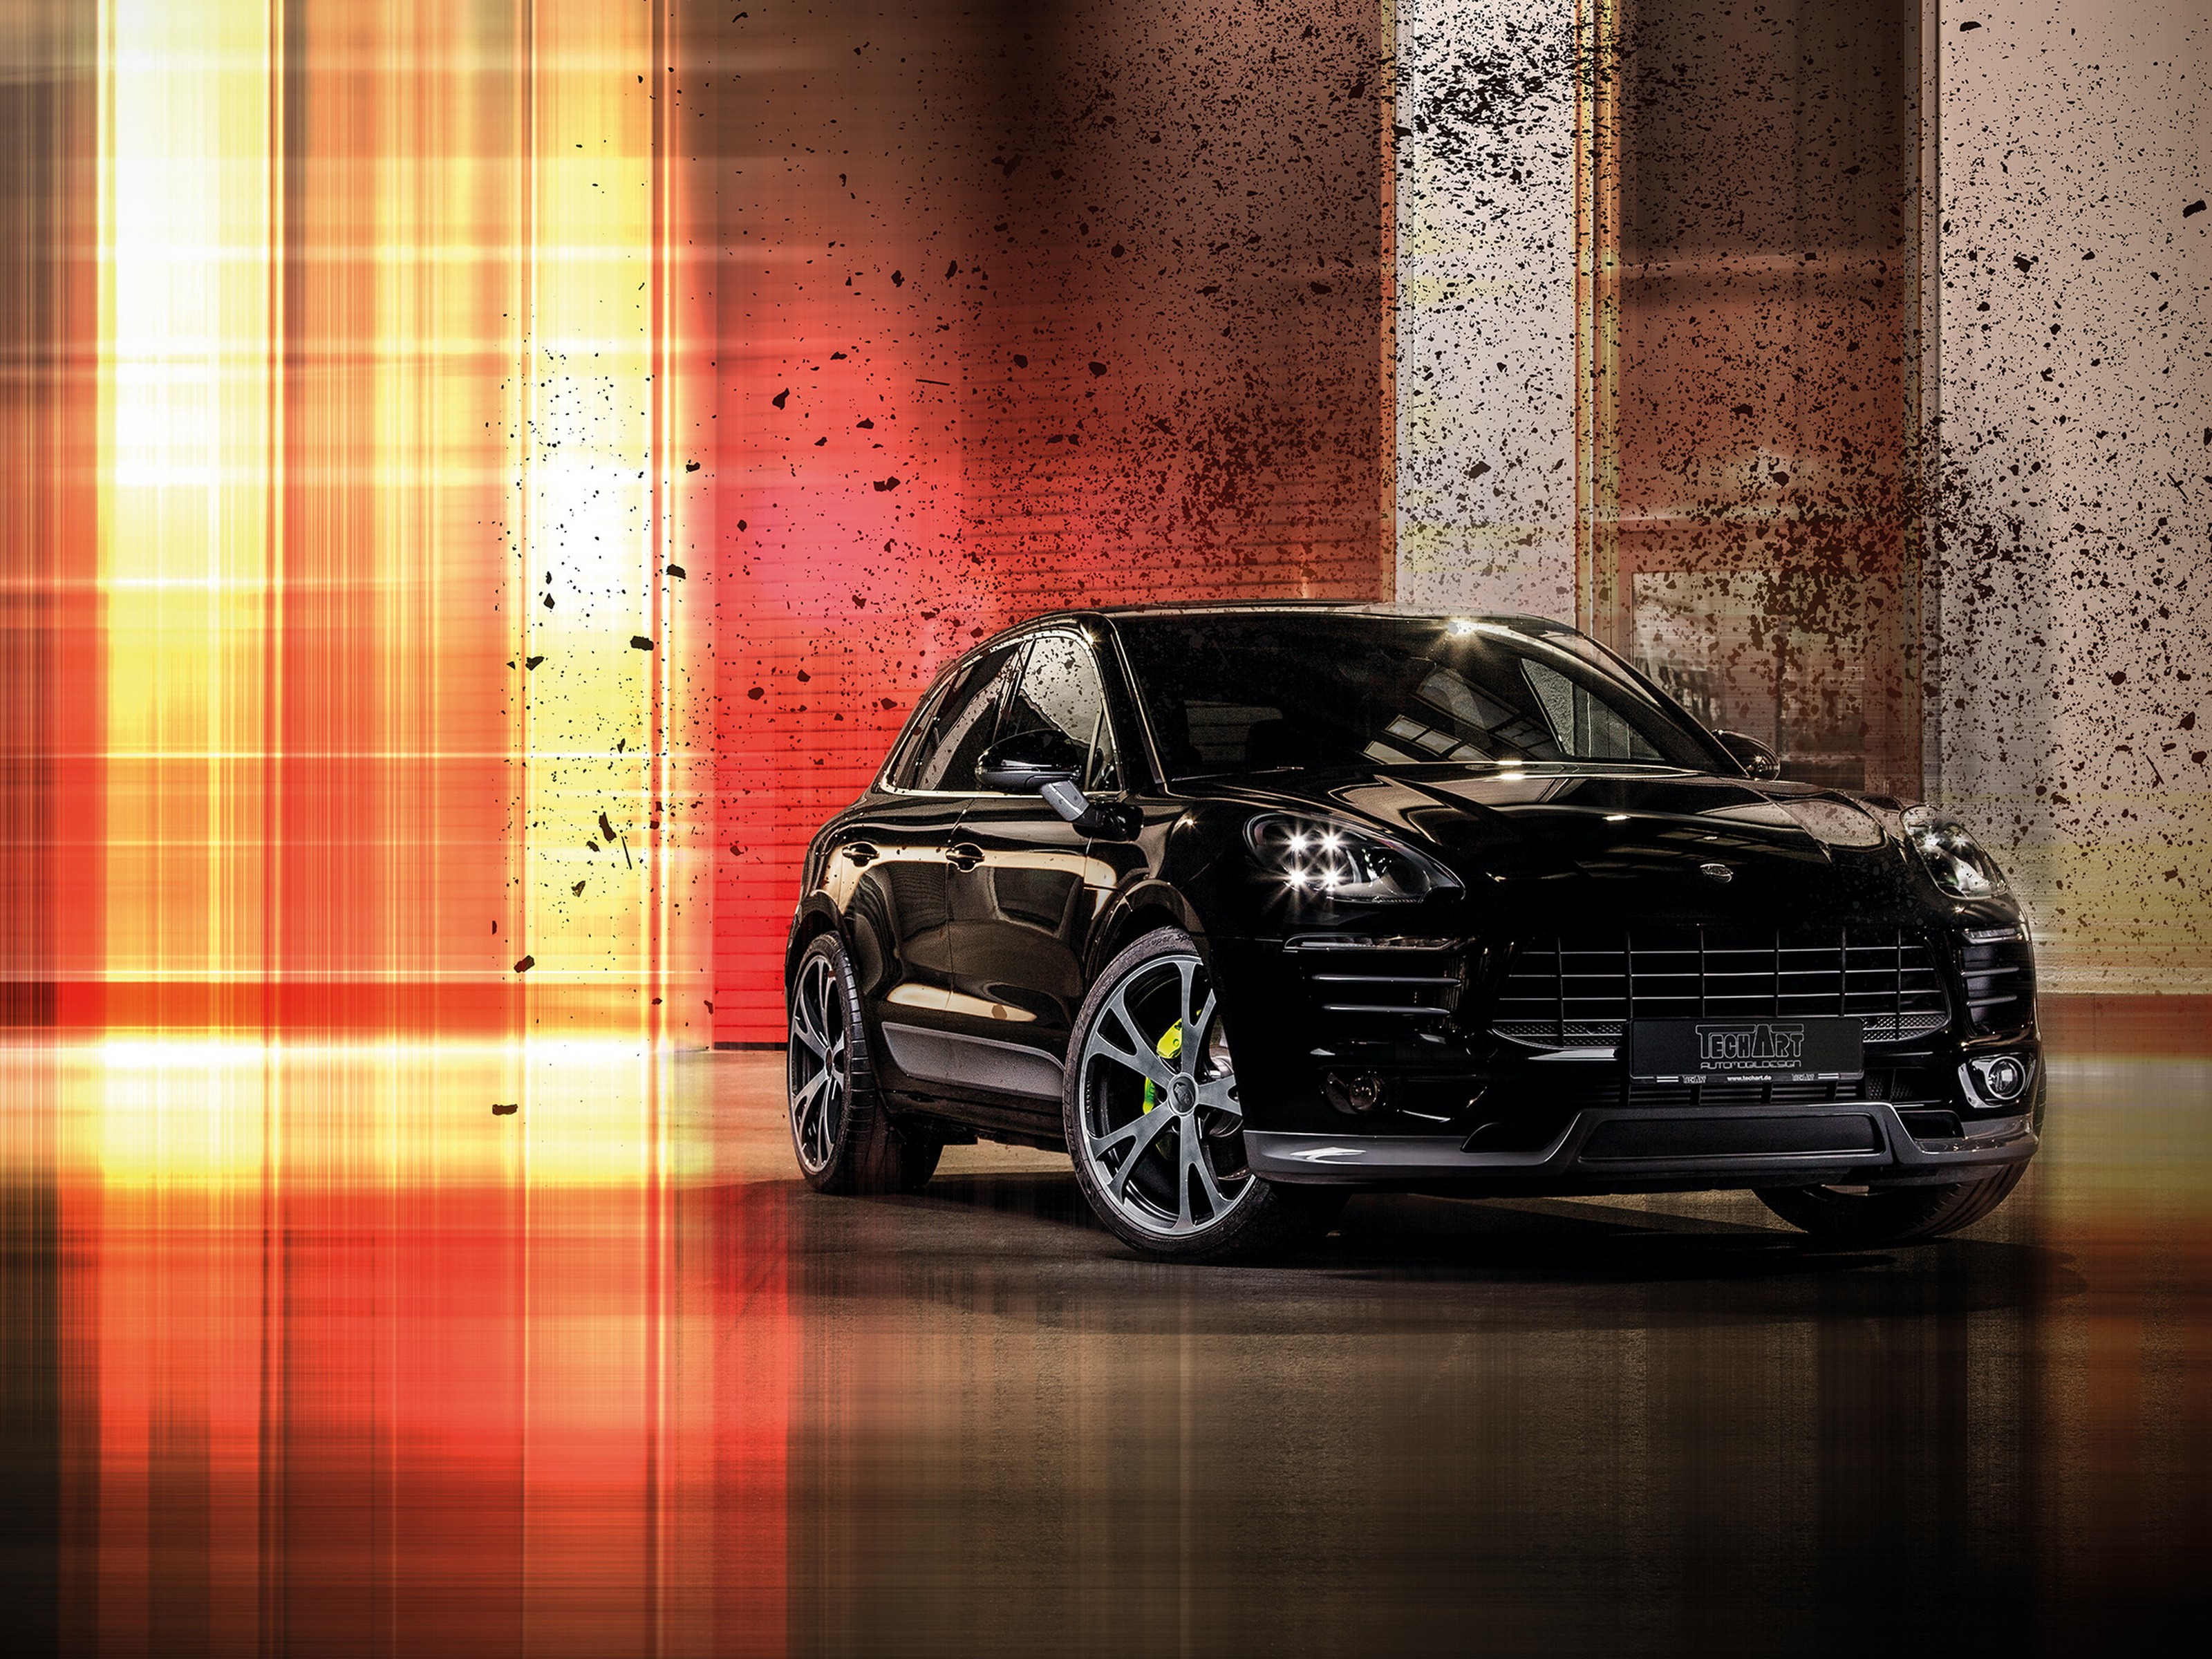 Porsche Macan Wallpaper Hd - Porsche Macan Turbo Body Kit , HD Wallpaper & Backgrounds